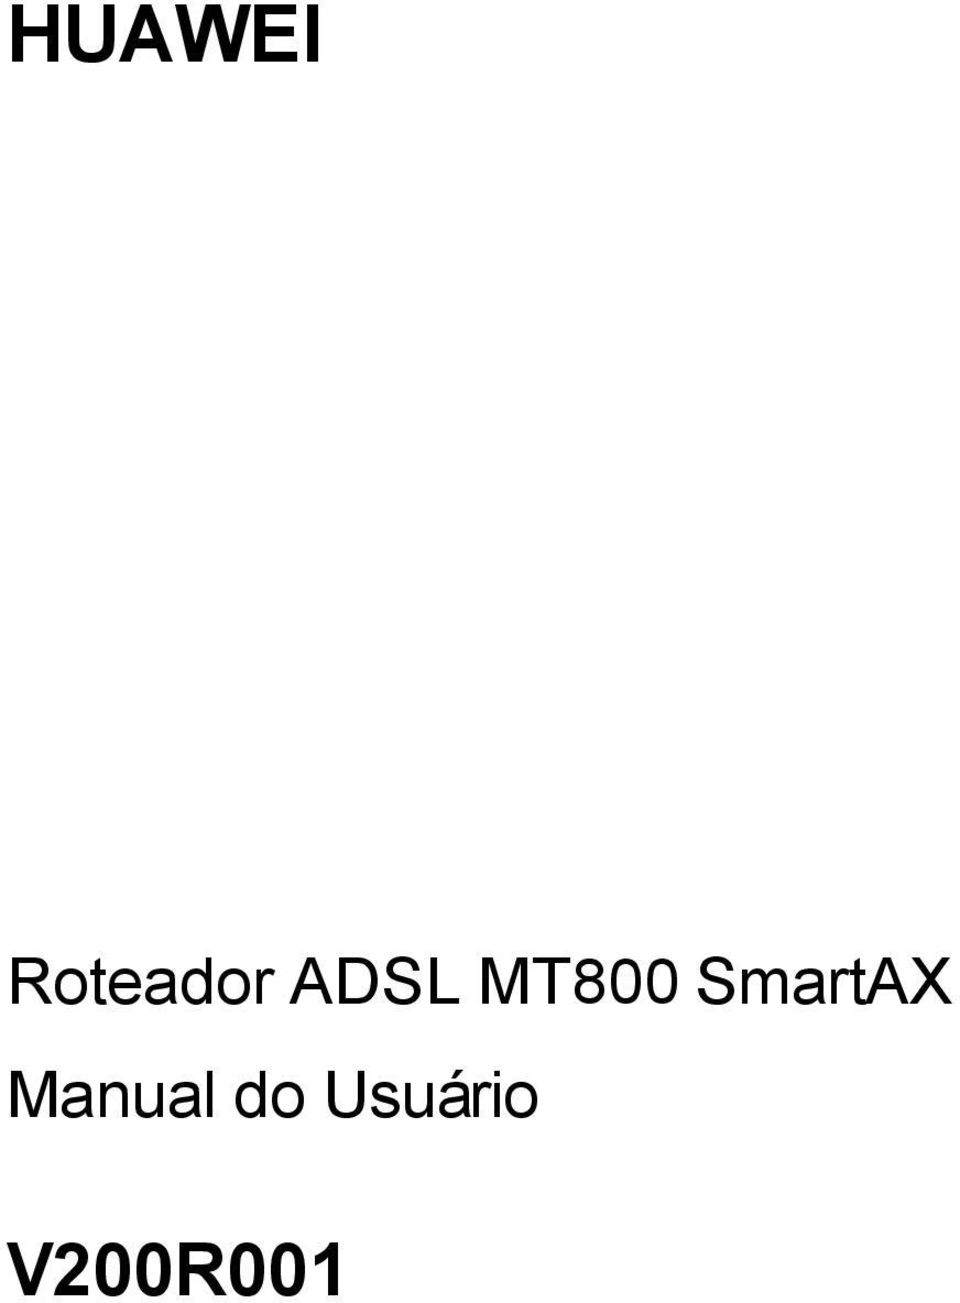 ADSL MT800